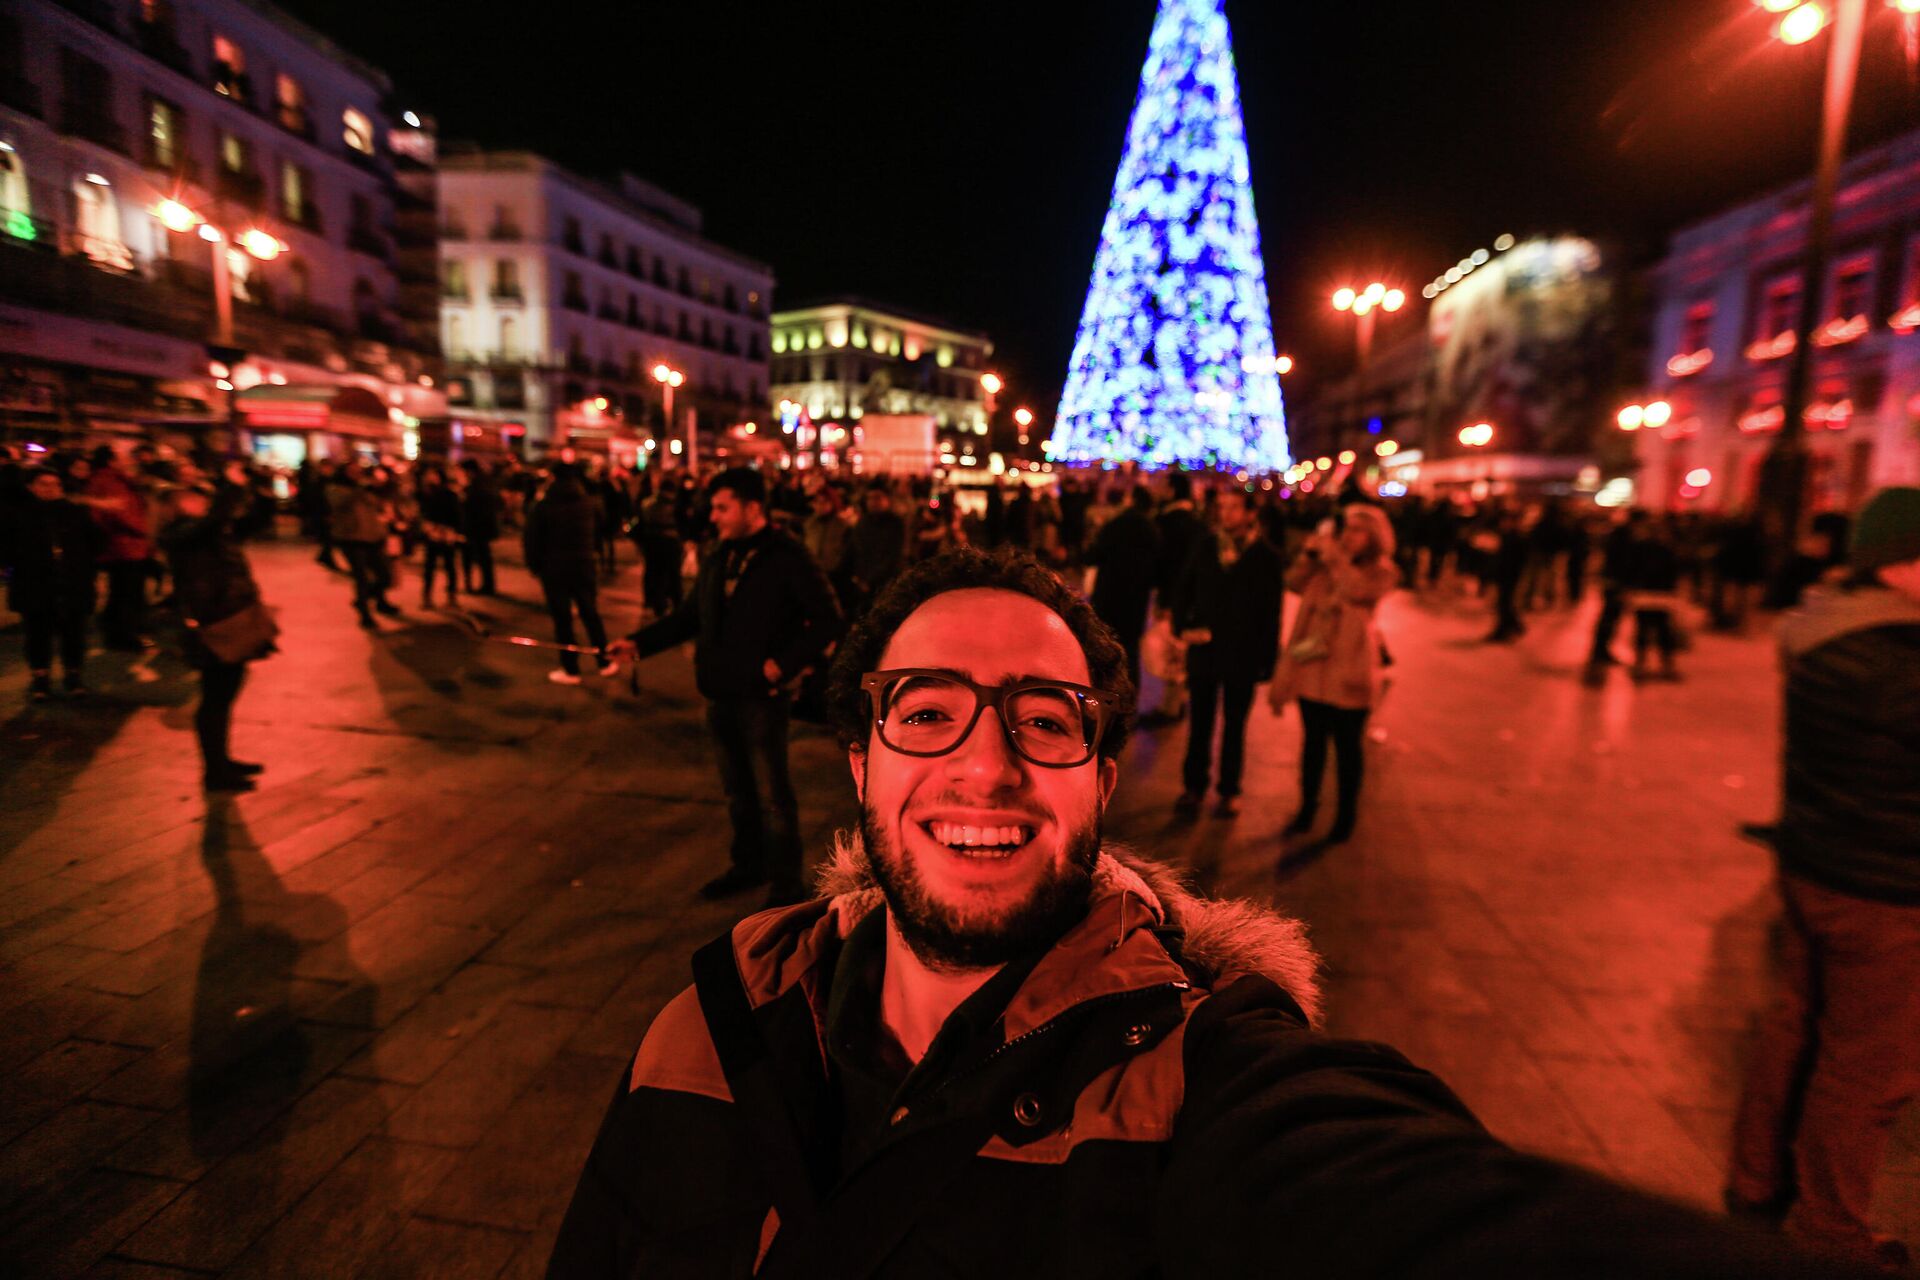 El fotoperiodista Belal Darder, su primer día en la Puerta del Sol de Madrid, en diciembre de 2016 - Sputnik Mundo, 1920, 25.03.2021